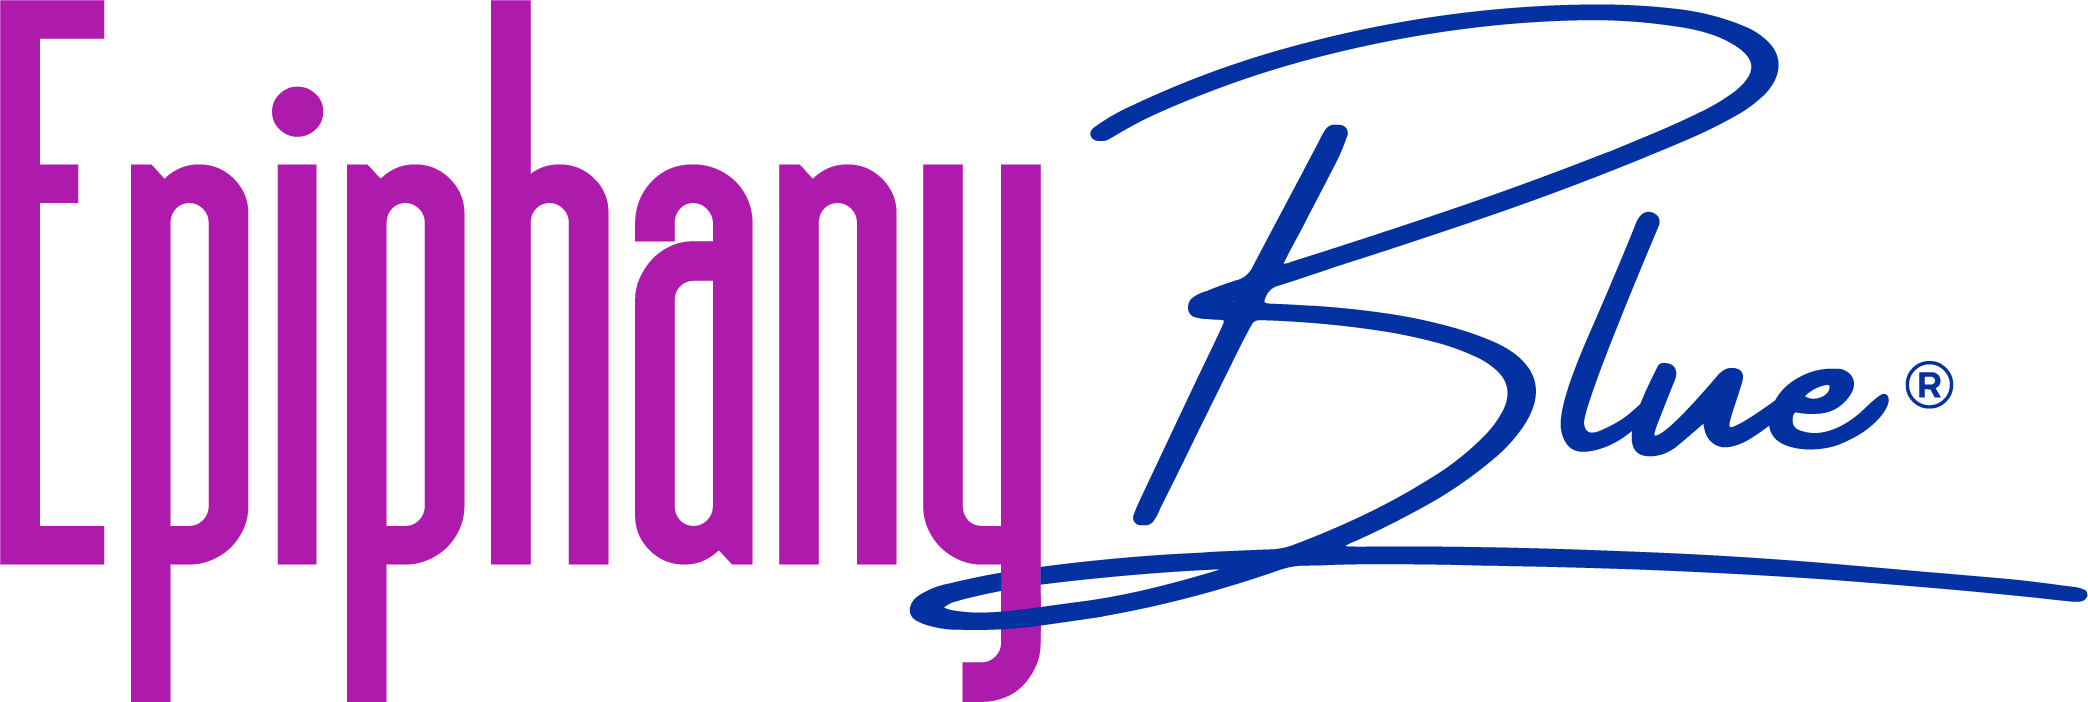 EpiphanyBlue Logo@4x.png